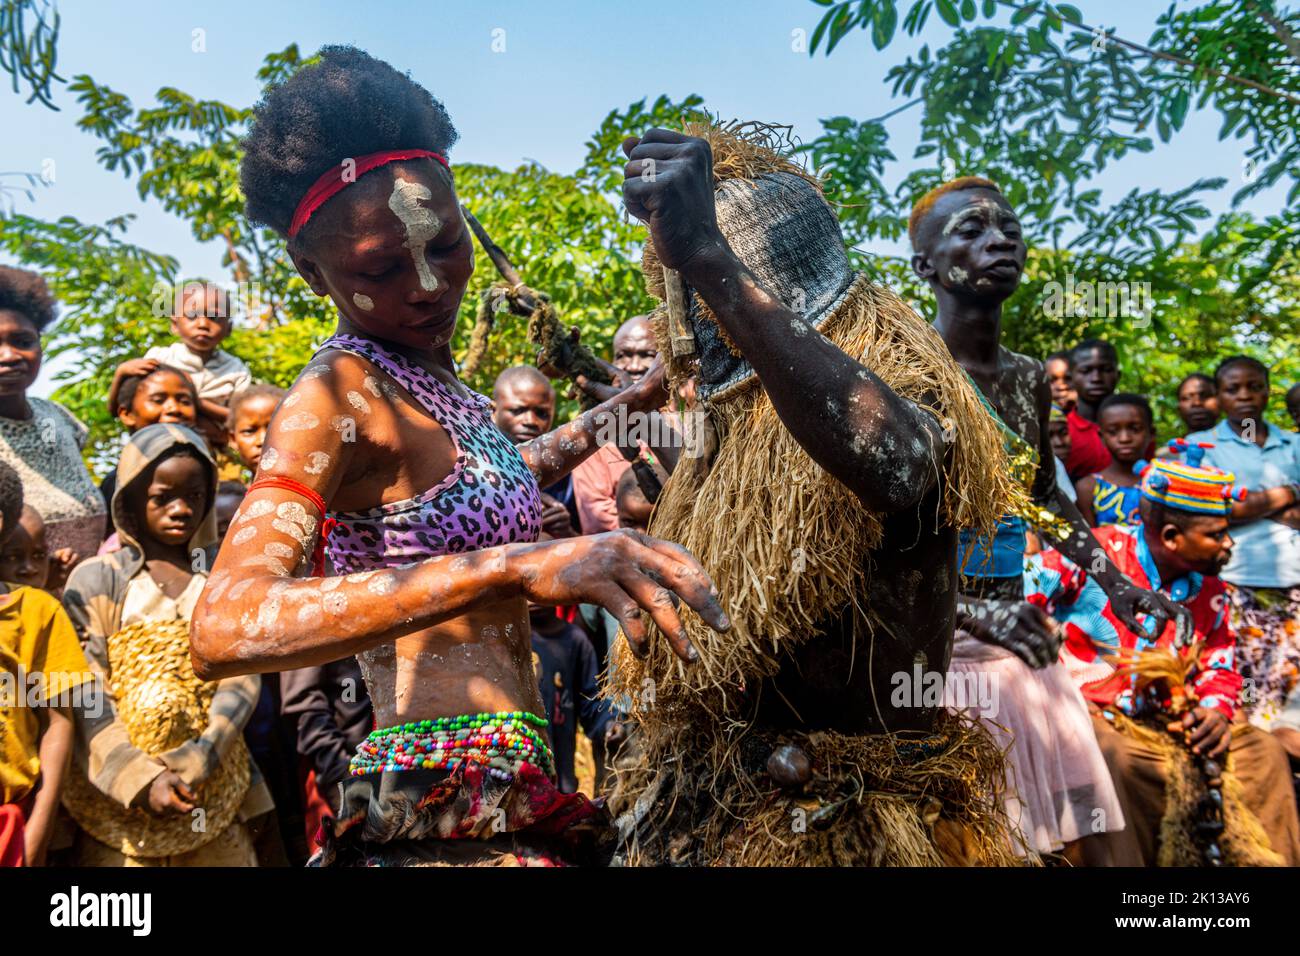 Tribu yaka que practica una danza ritual, Mbandane, República Democrática del Congo, África Foto de stock